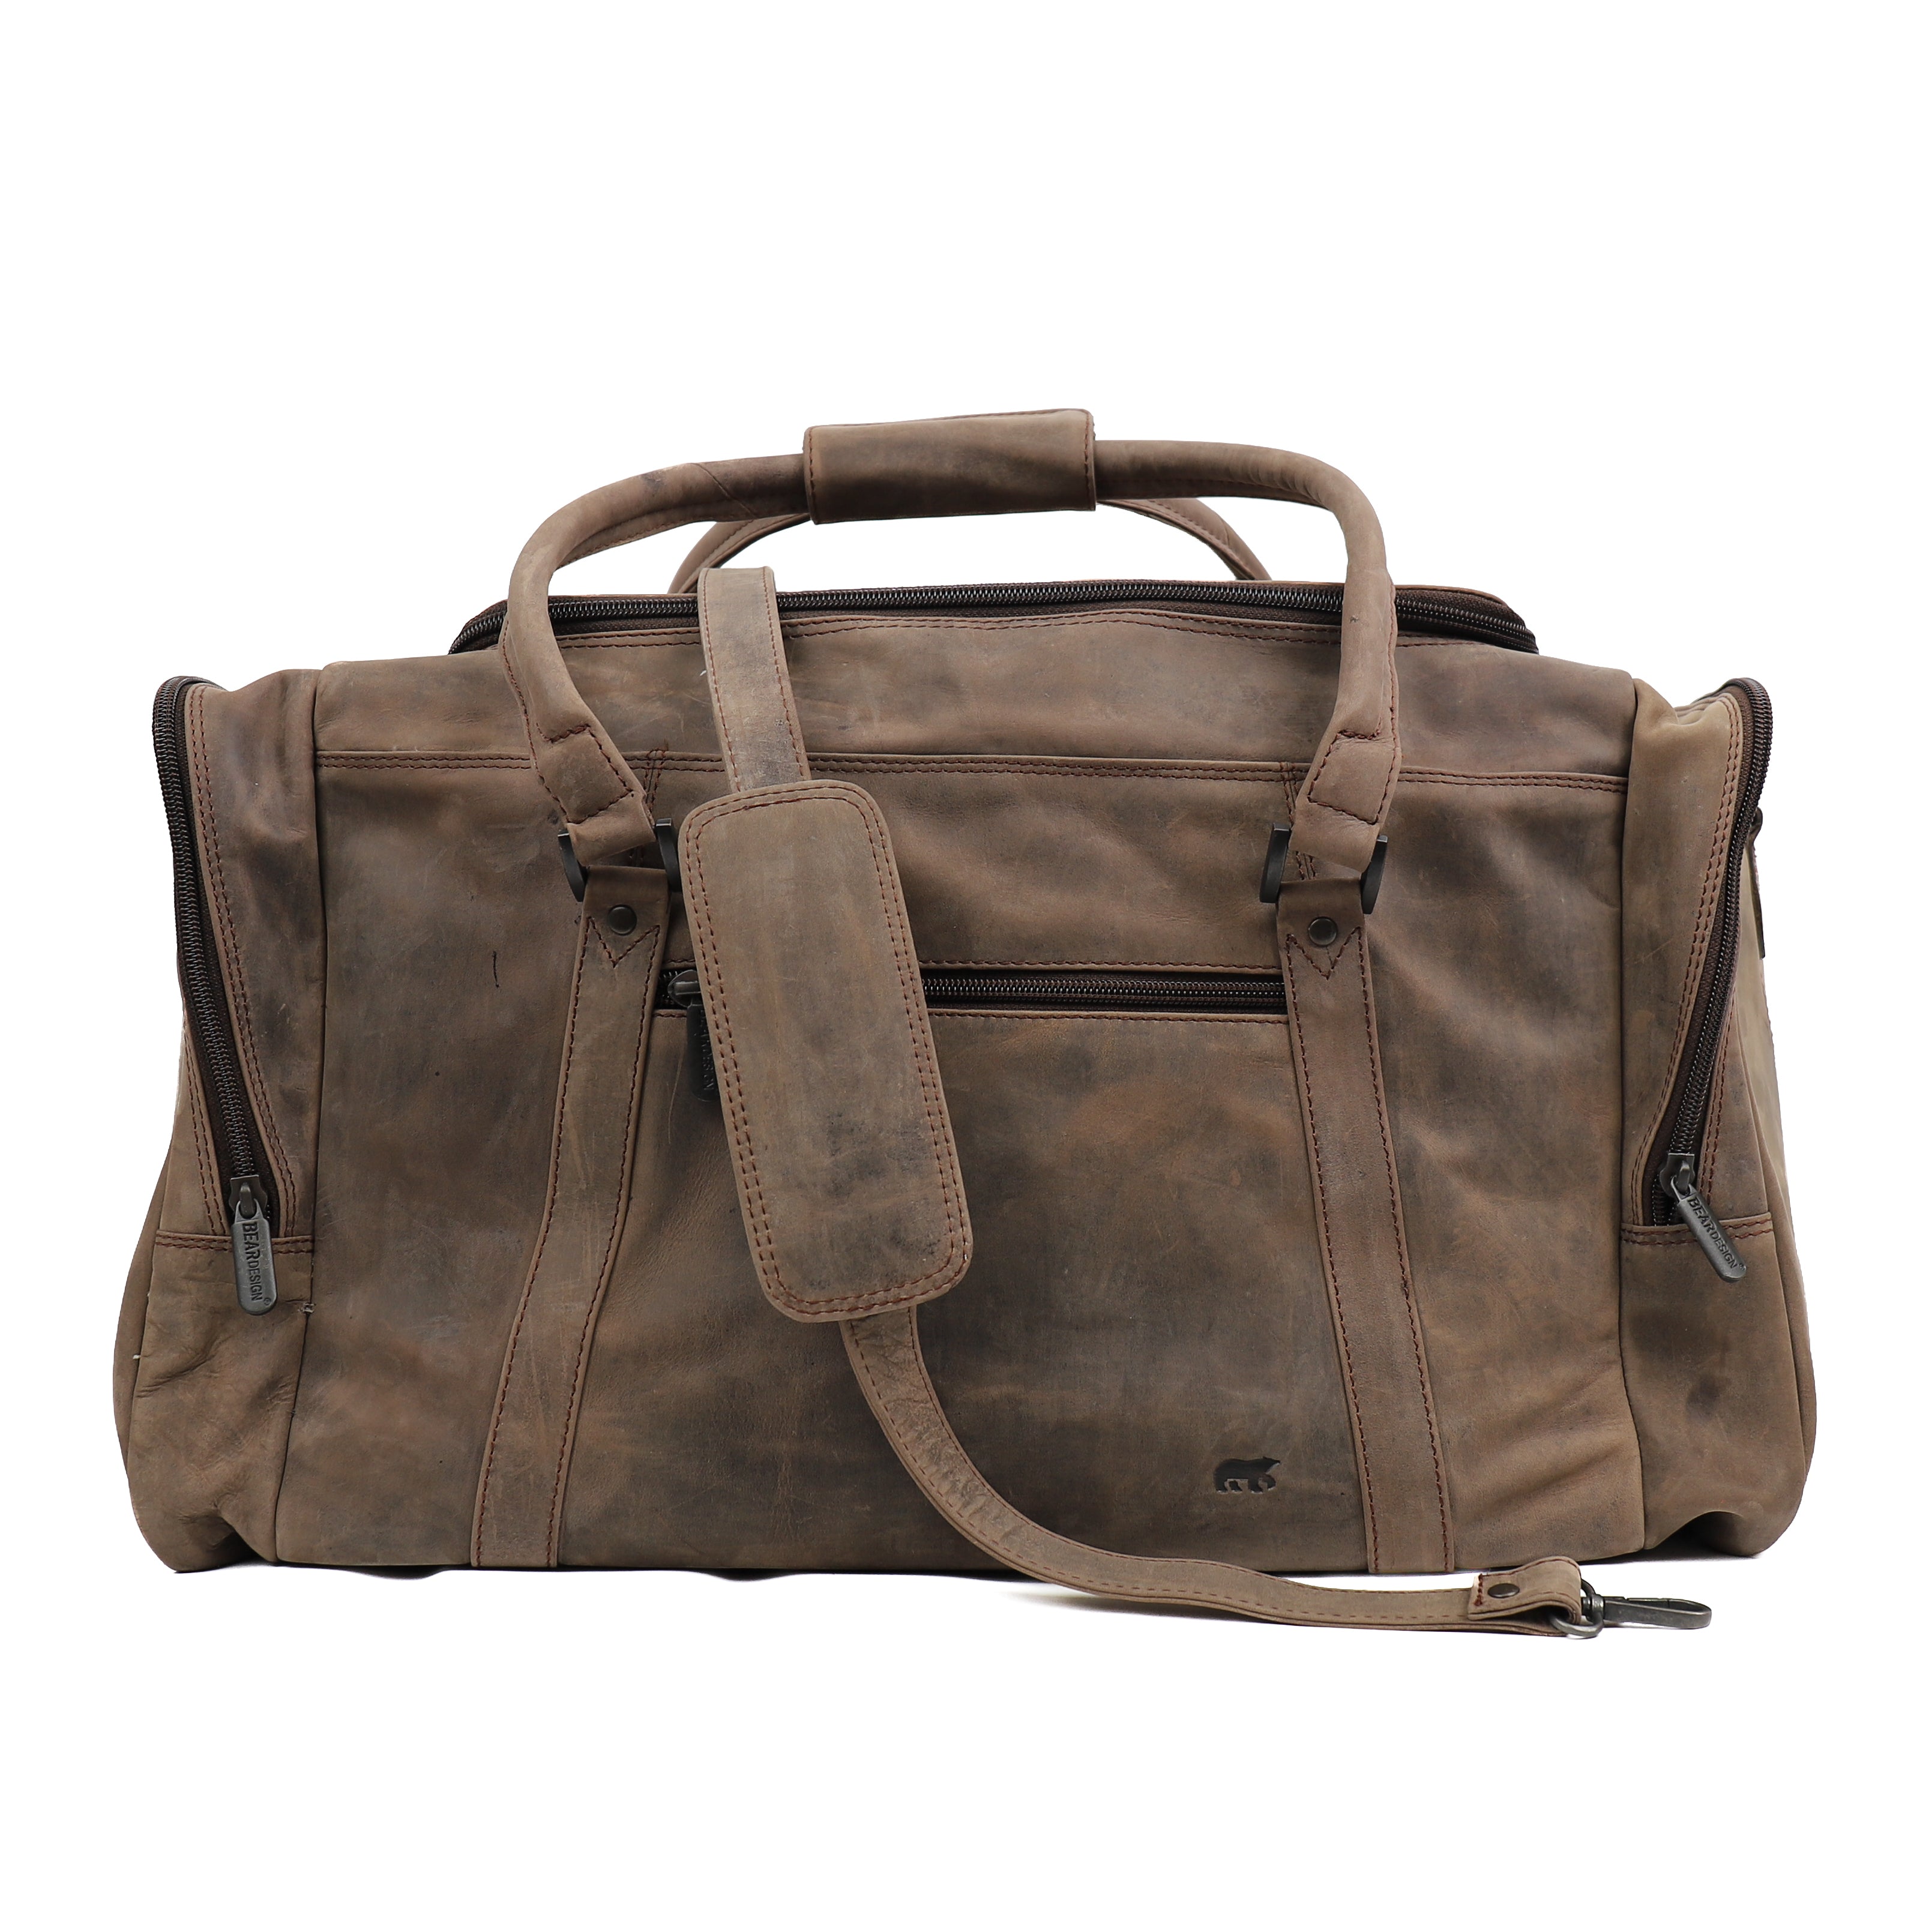 Weekend bag 'Max' brown - HD 5643